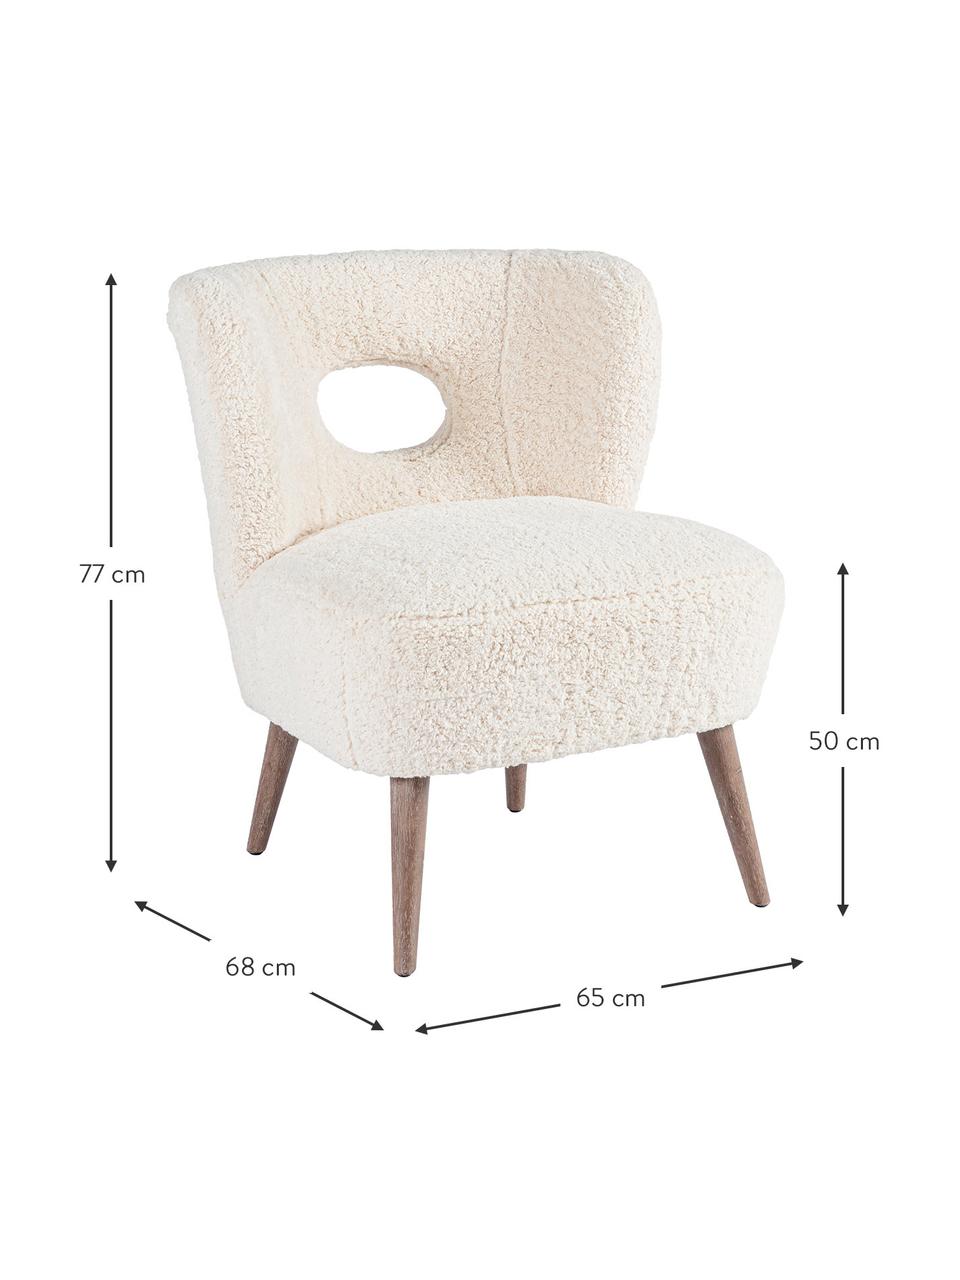 Fotel wypoczynkowy Teddy Cortina, Stelaż: drewno jodłowe, Nogi: drewno kauczukowe, Odcienie kremowego, S 65 x G 68 cm